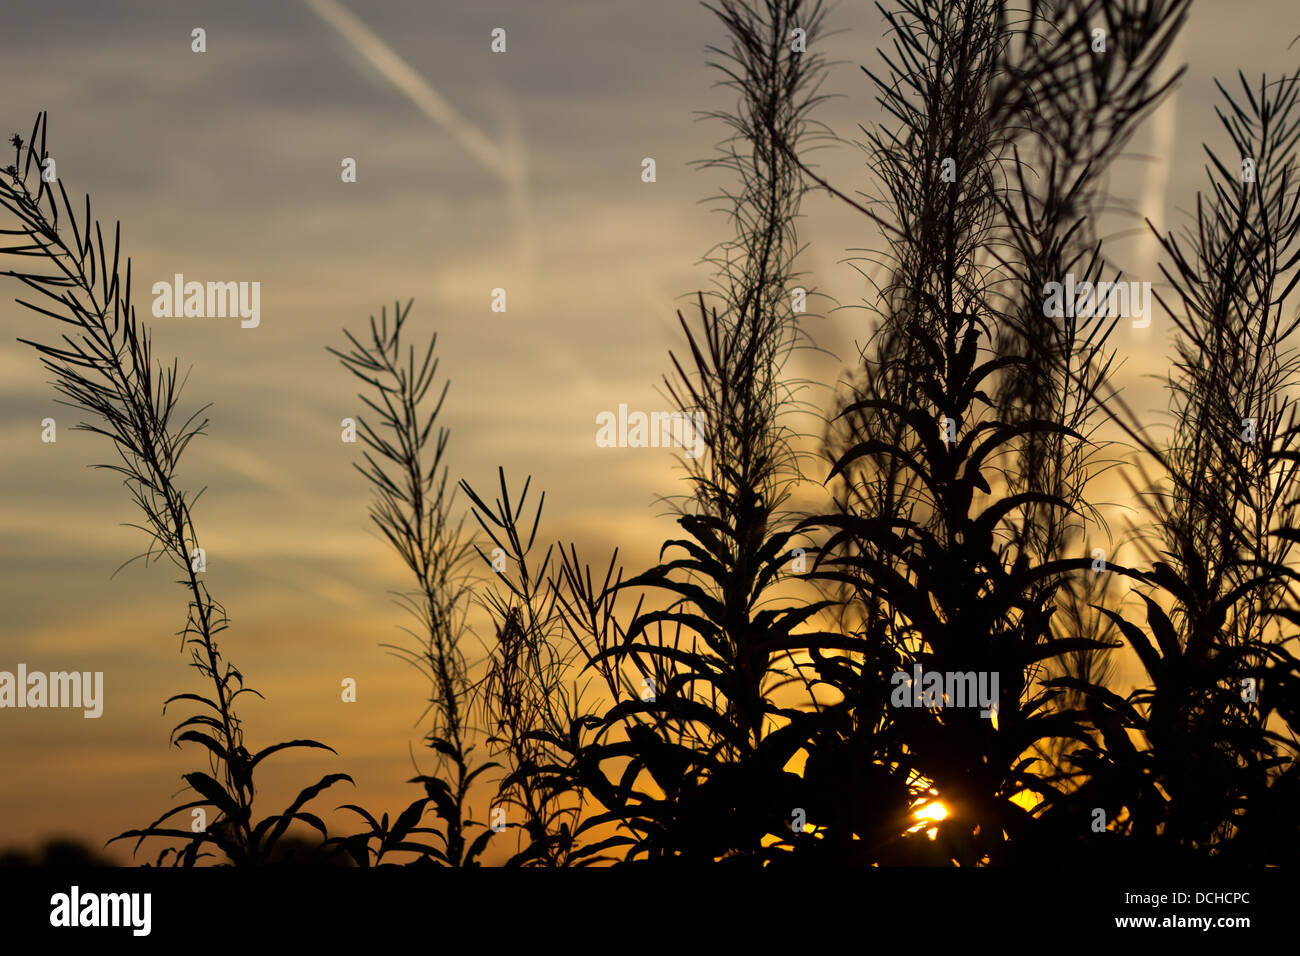 silhouette of grasses in golden sunrise against sky Stock Photo